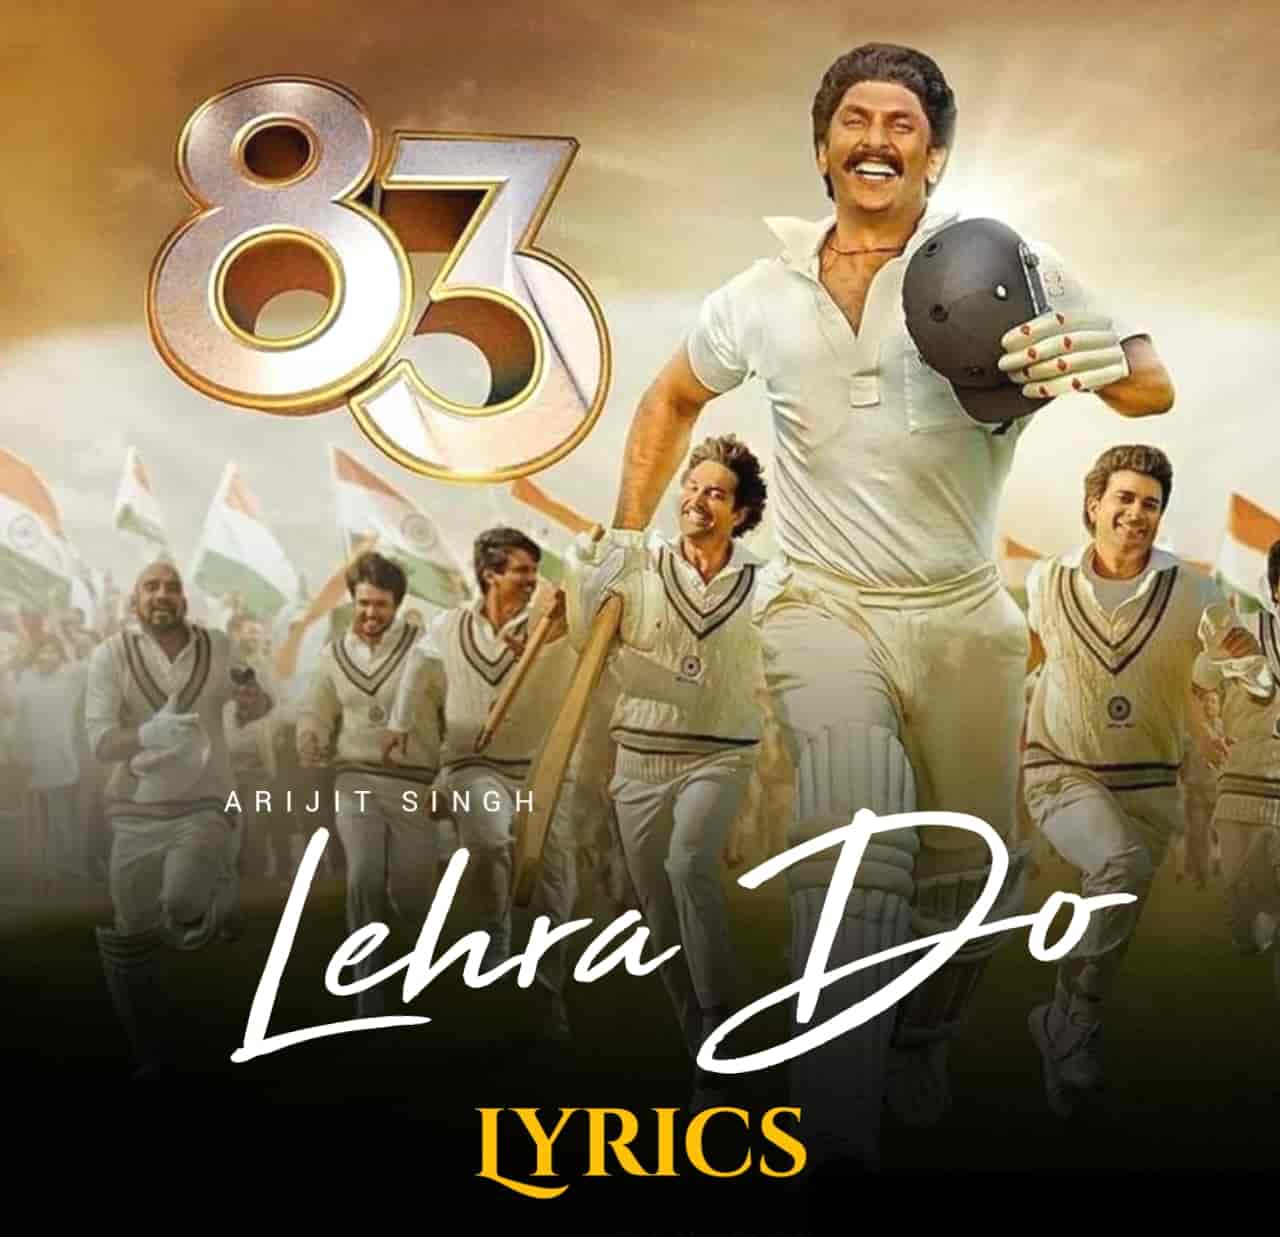 Lehra Do Lyrics Image From Movie 83 Features Ranveer Singh